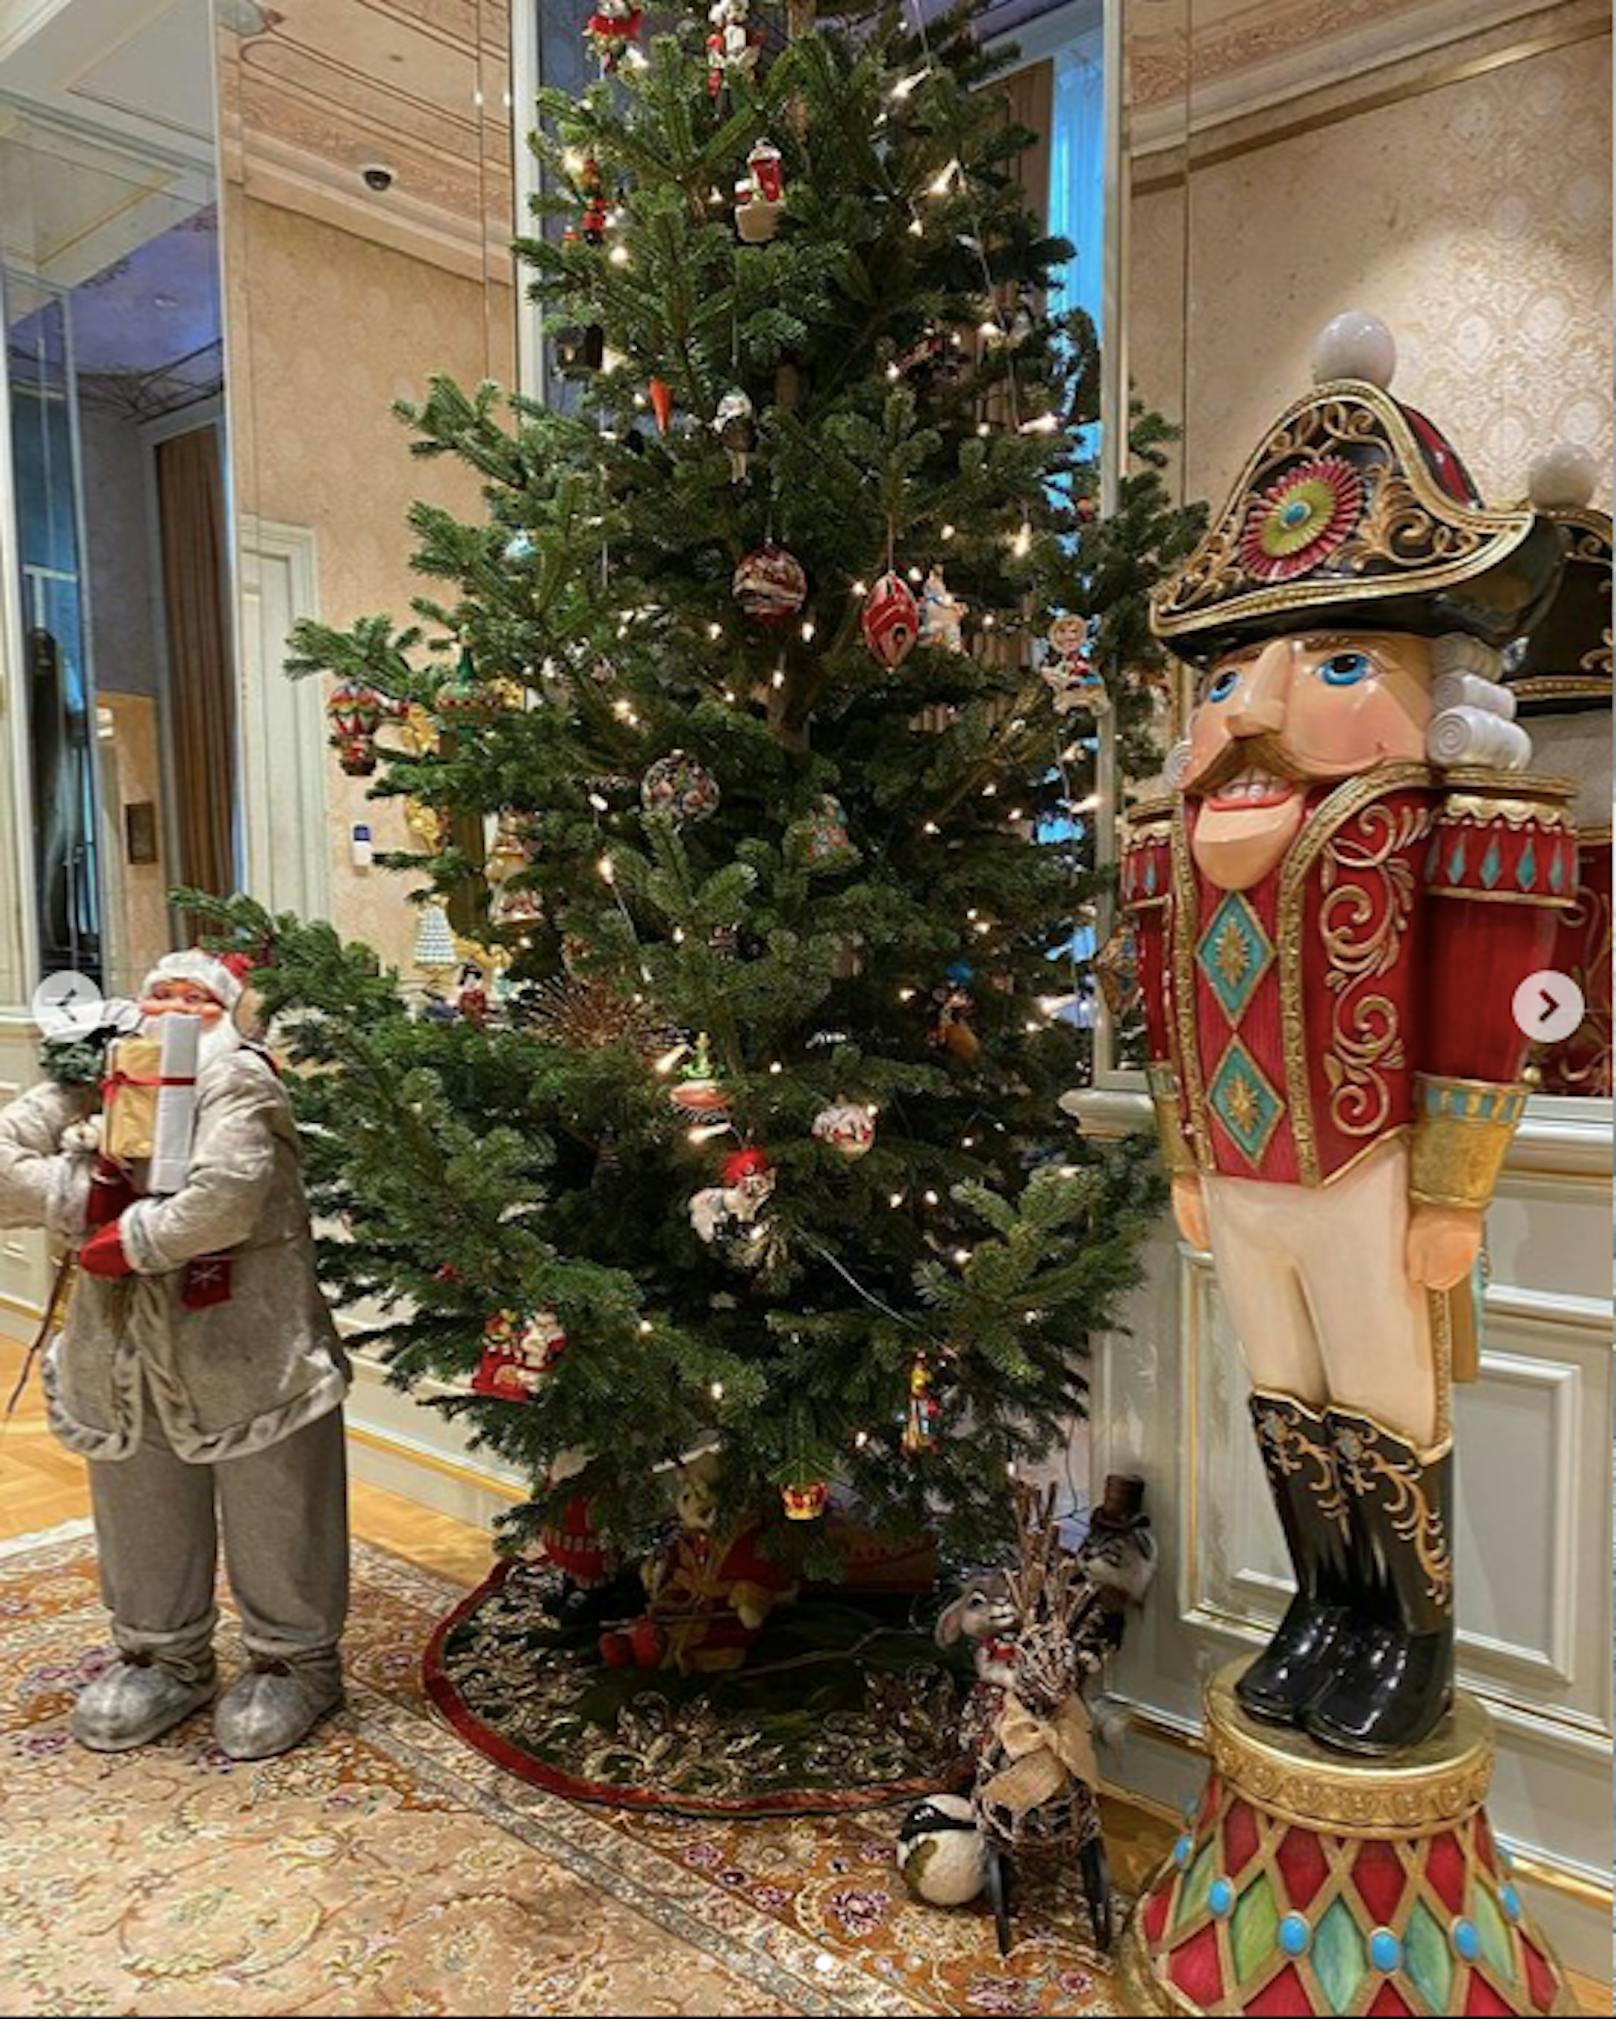 Der große Baum im Vorzimmer – Nussknacker und Weihnachtsmann an seiner Seite. 